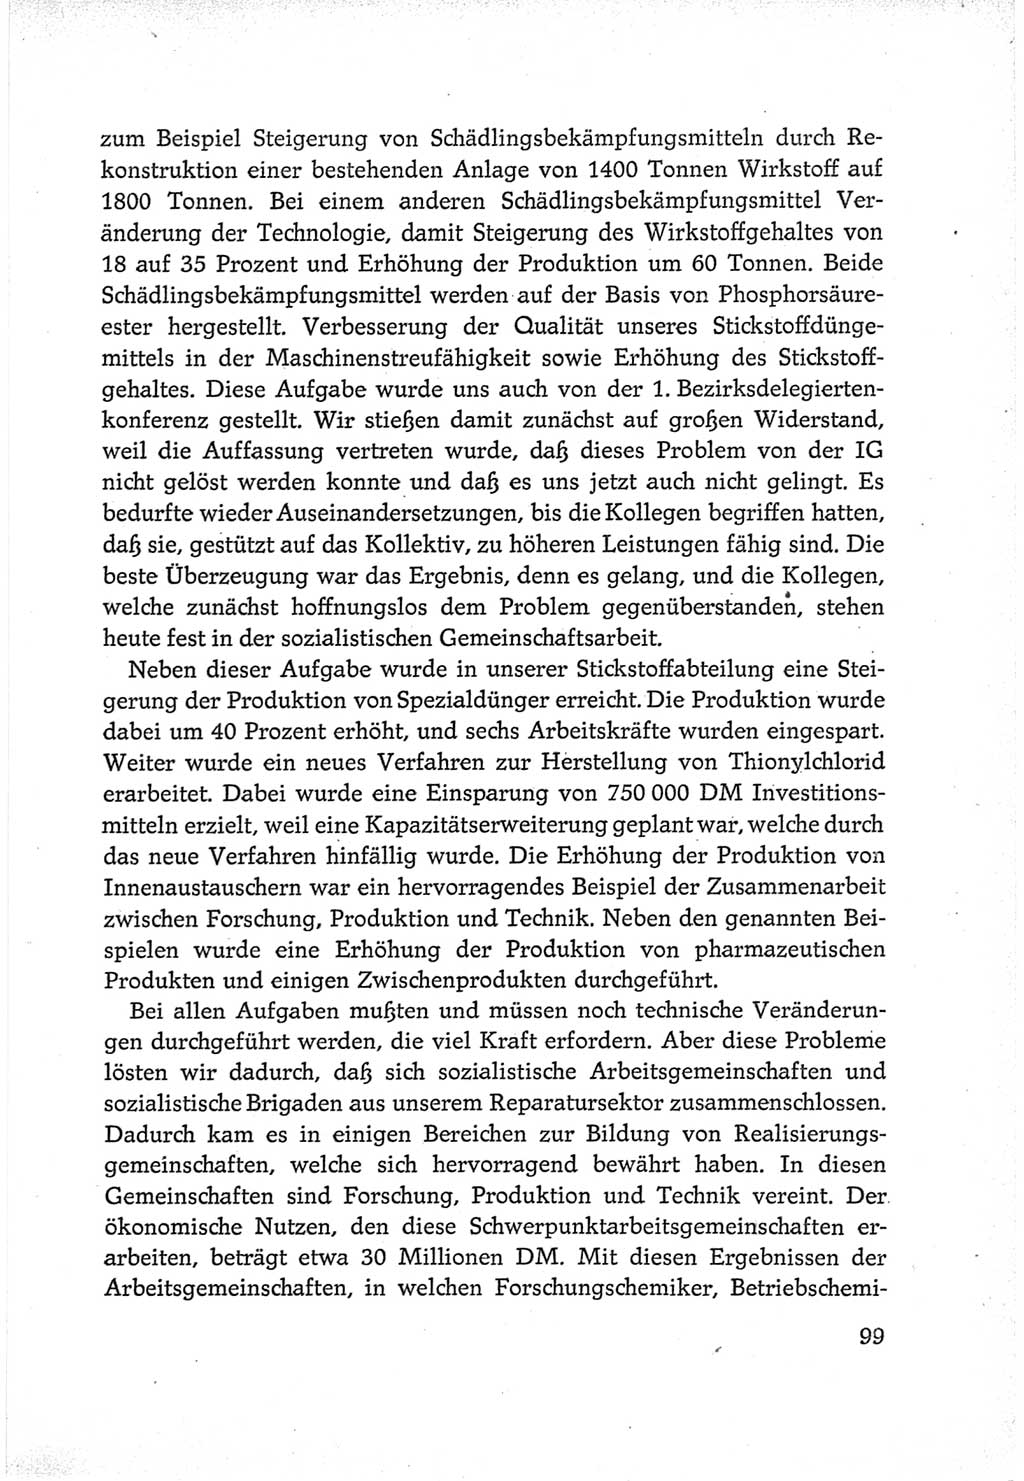 Protokoll der Verhandlungen des Ⅵ. Parteitages der Sozialistischen Einheitspartei Deutschlands (SED) [Deutsche Demokratische Republik (DDR)] 1963, Band Ⅲ, Seite 99 (Prot. Verh. Ⅵ. PT SED DDR 1963, Bd. Ⅲ, S. 99)